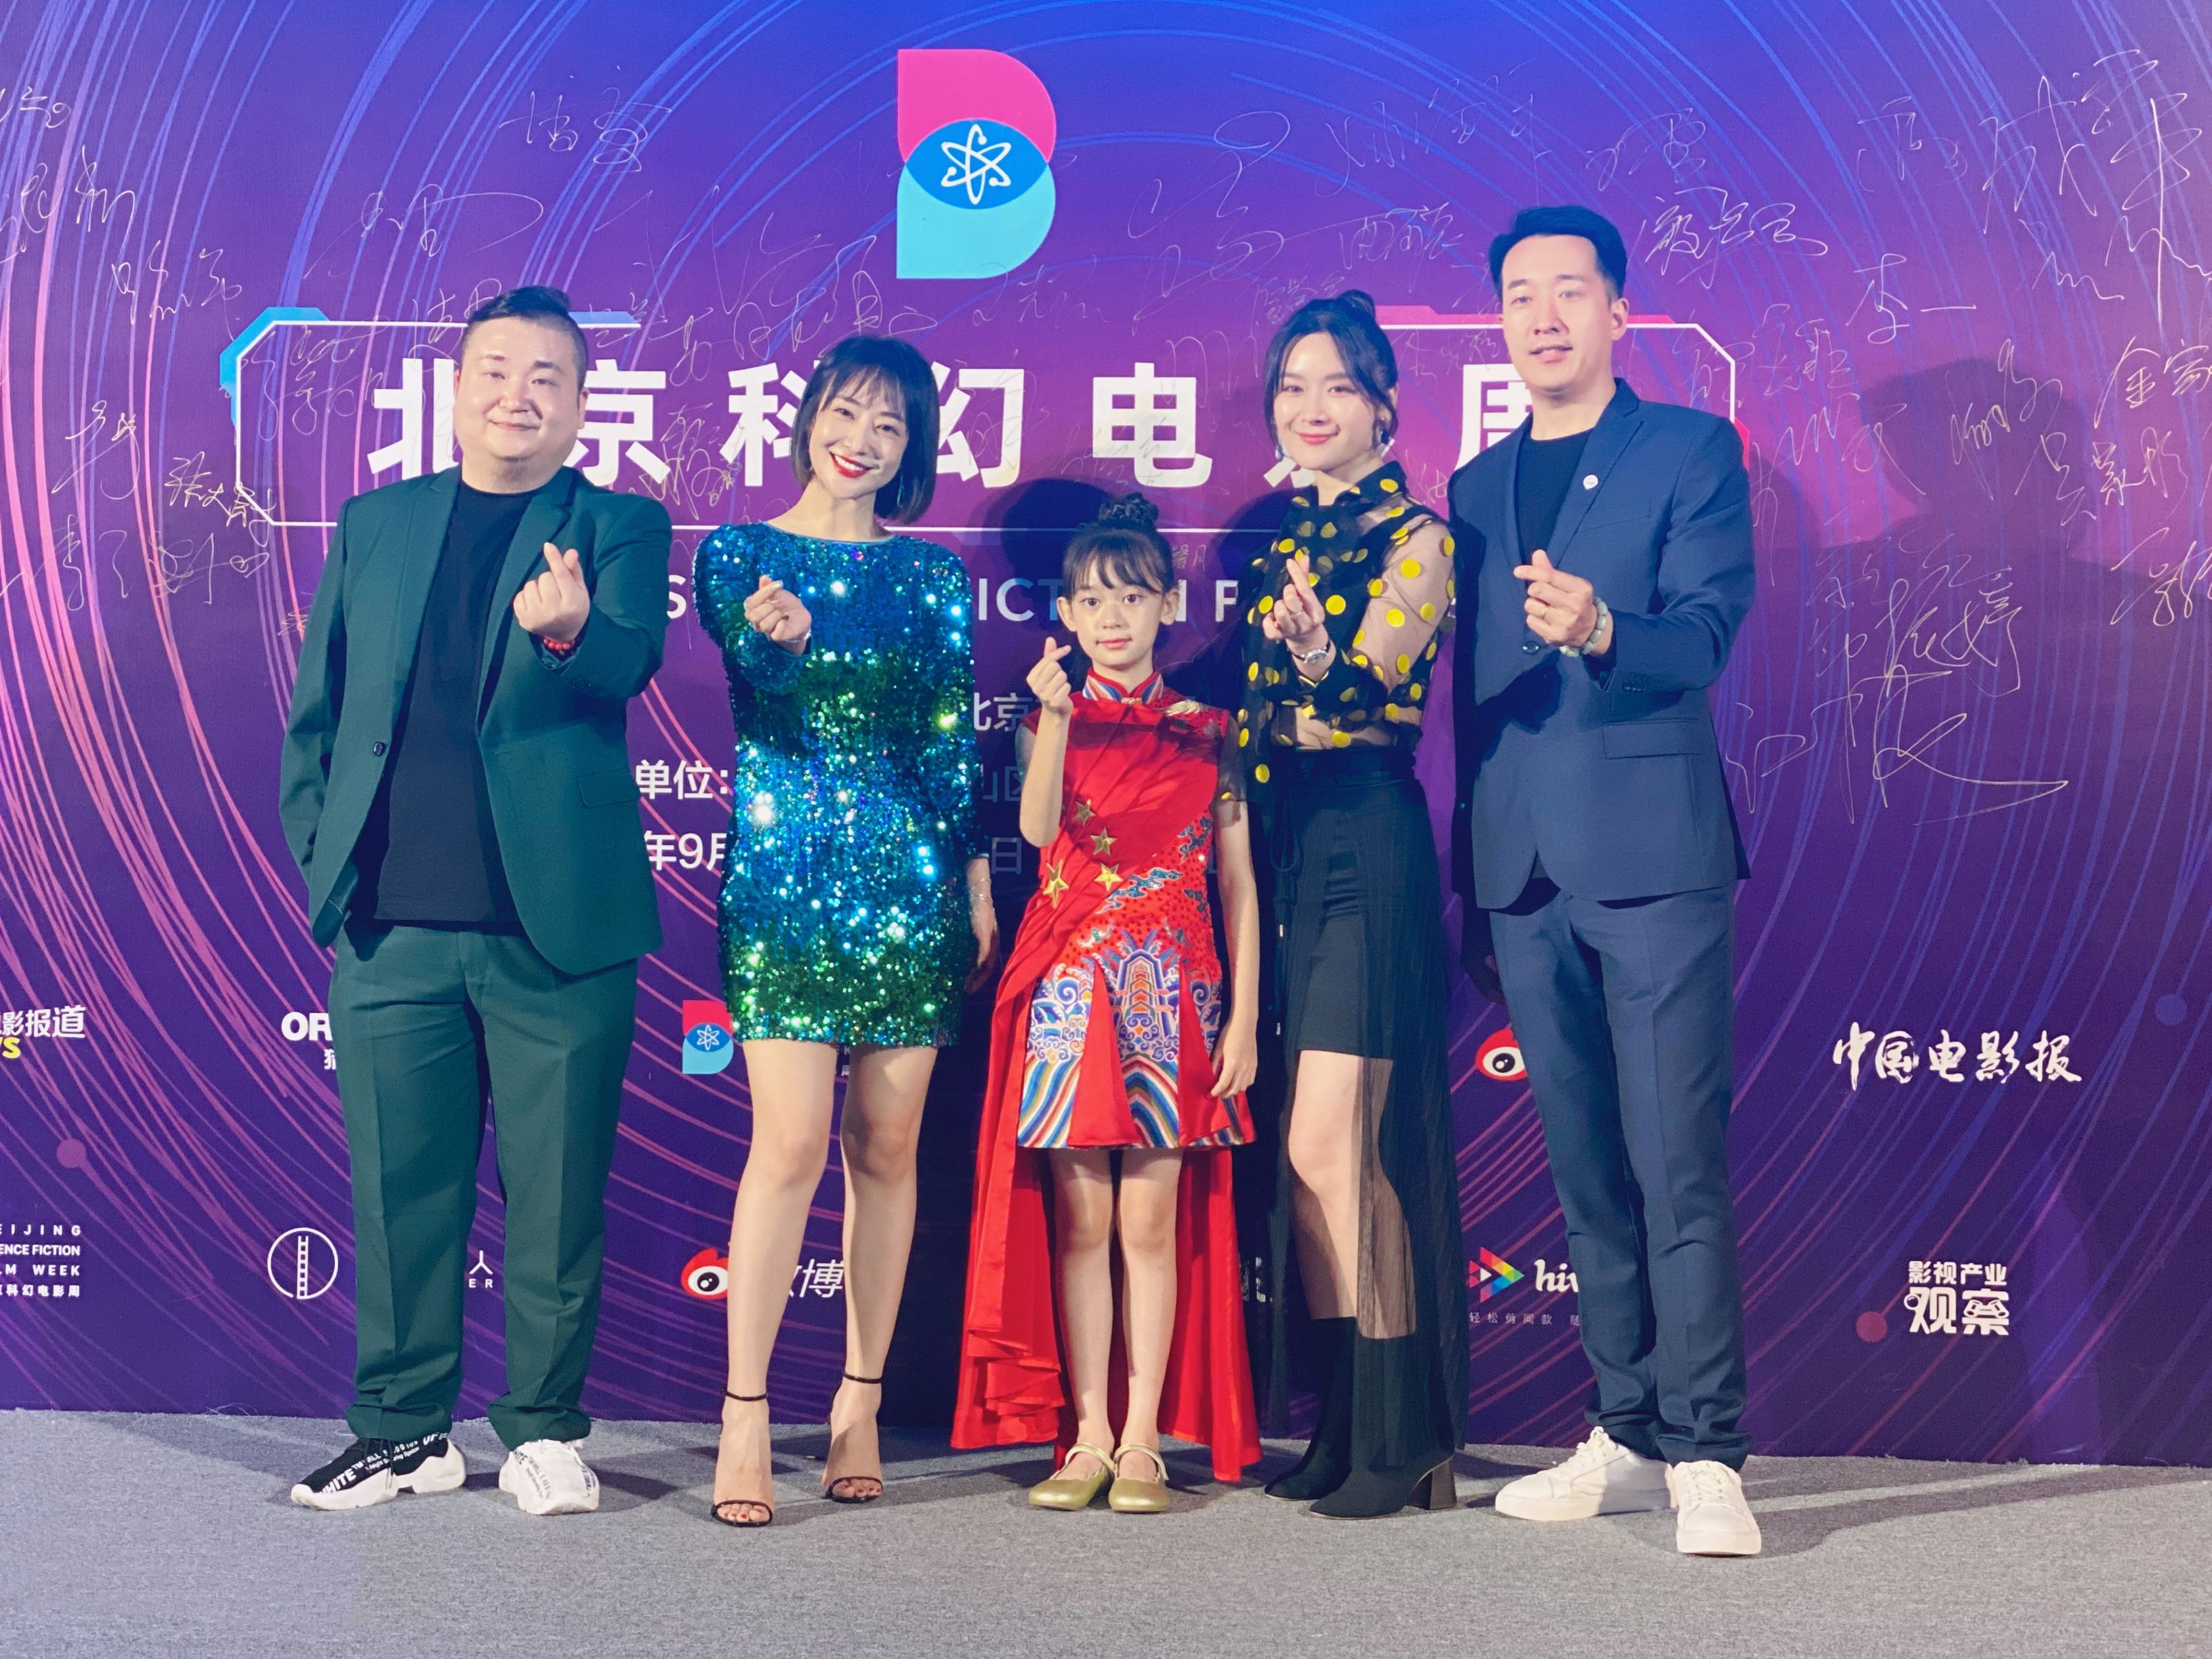 刘志苗出席北京科幻电影周，被赞“小演员”、“大骨气”